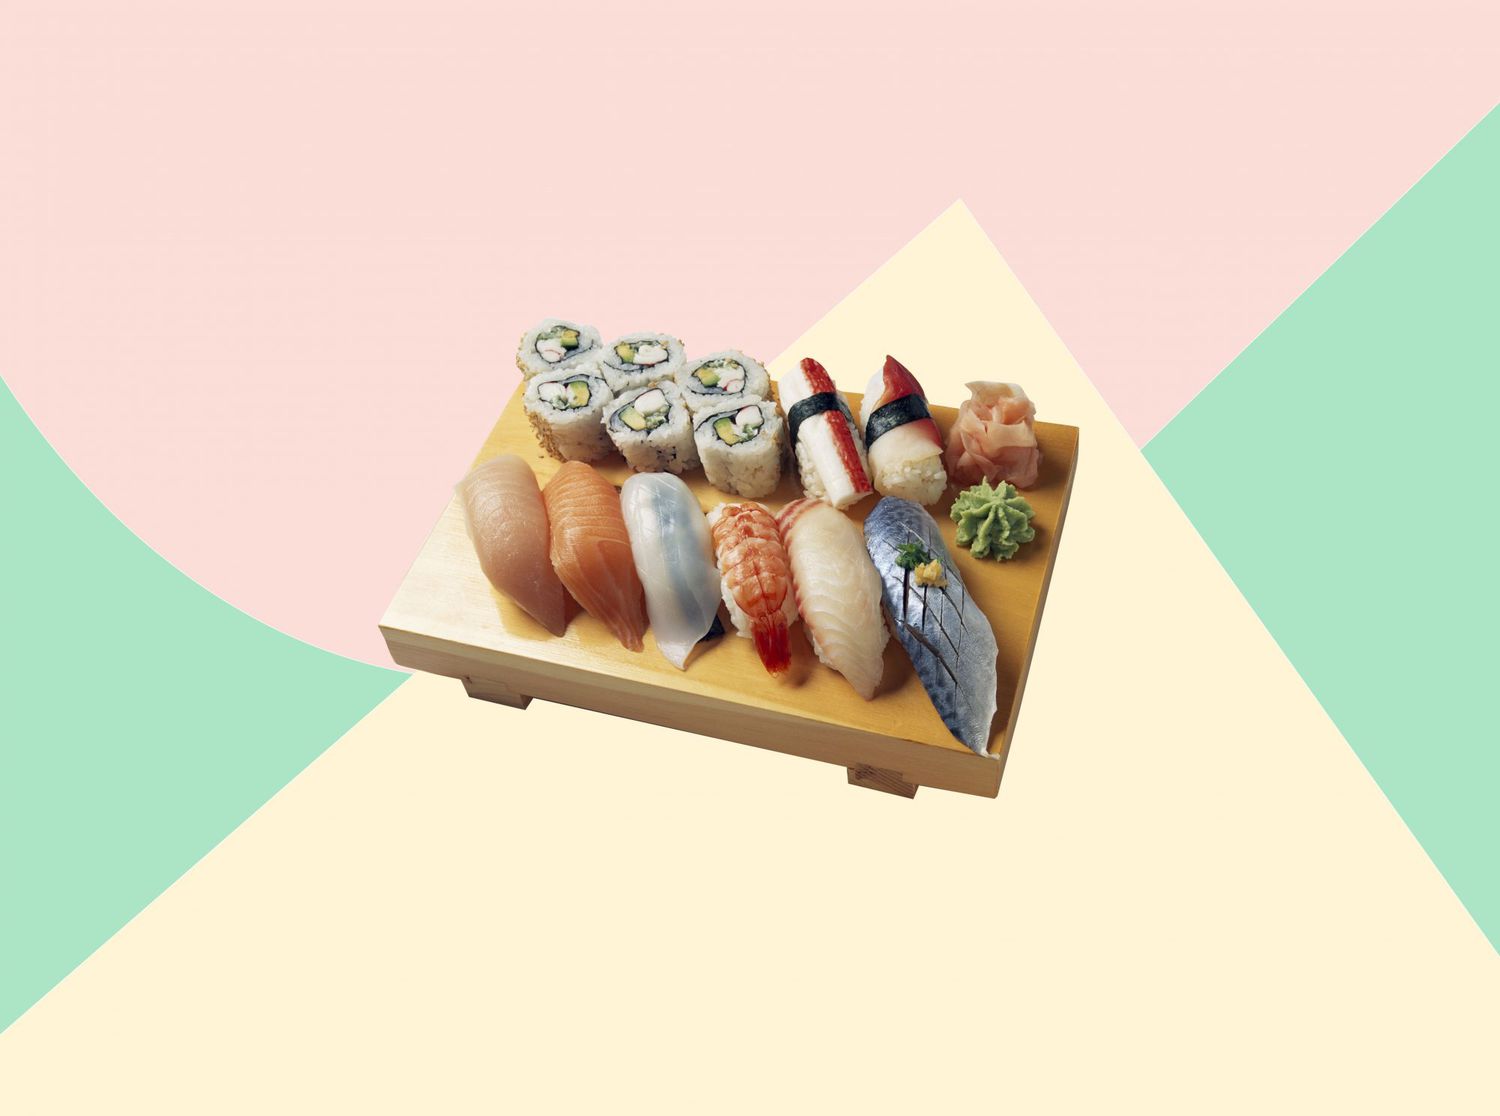 Dies ist das Bestemdash;und Nurmdash;Wie man Sushi isst, so ein renommierter Sushi-Koch